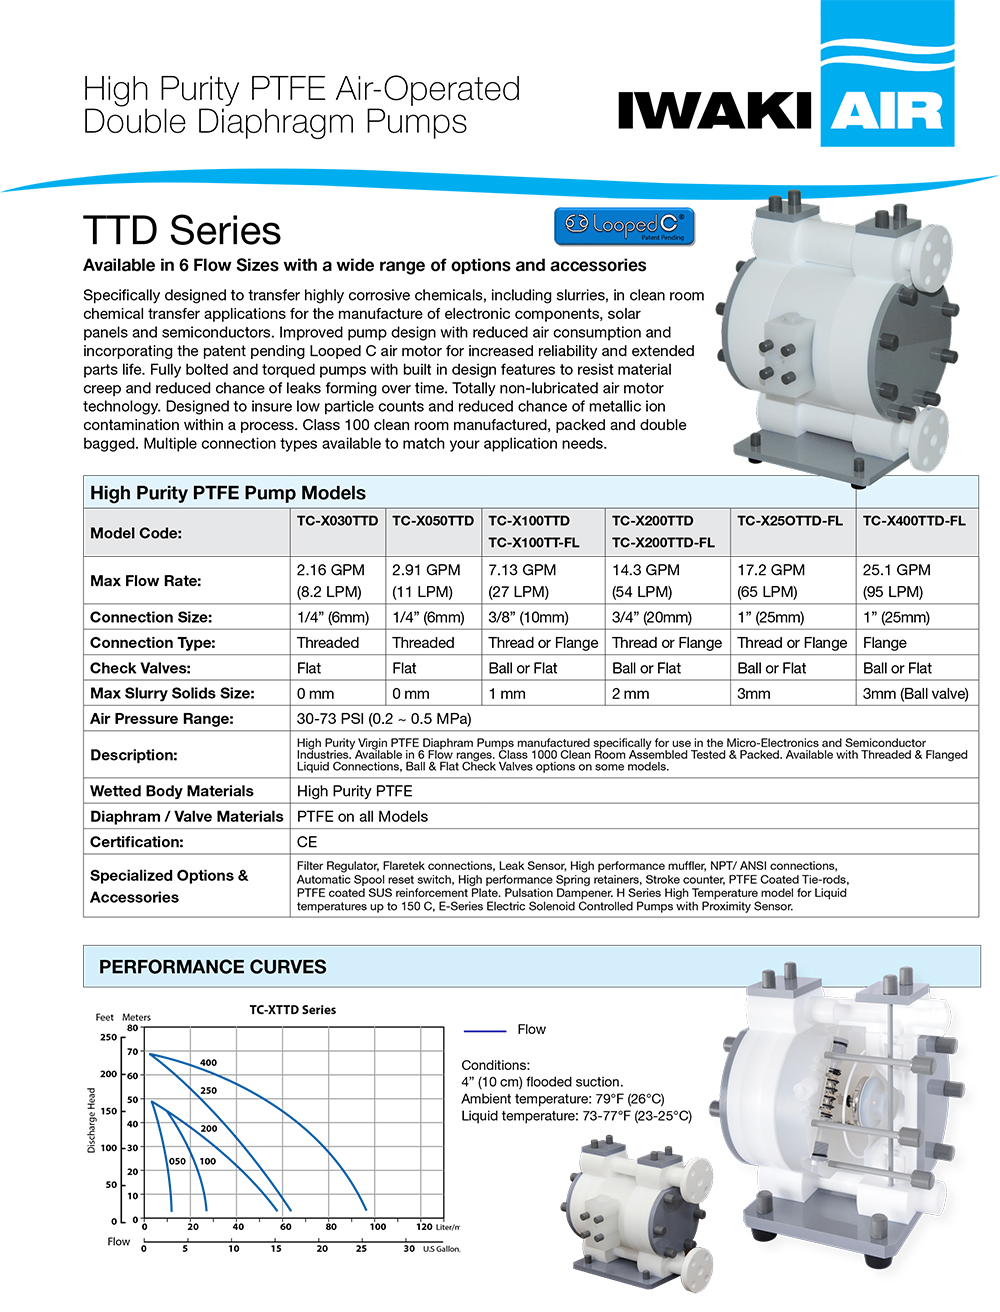 TCX-TTD Series AODD Pumps